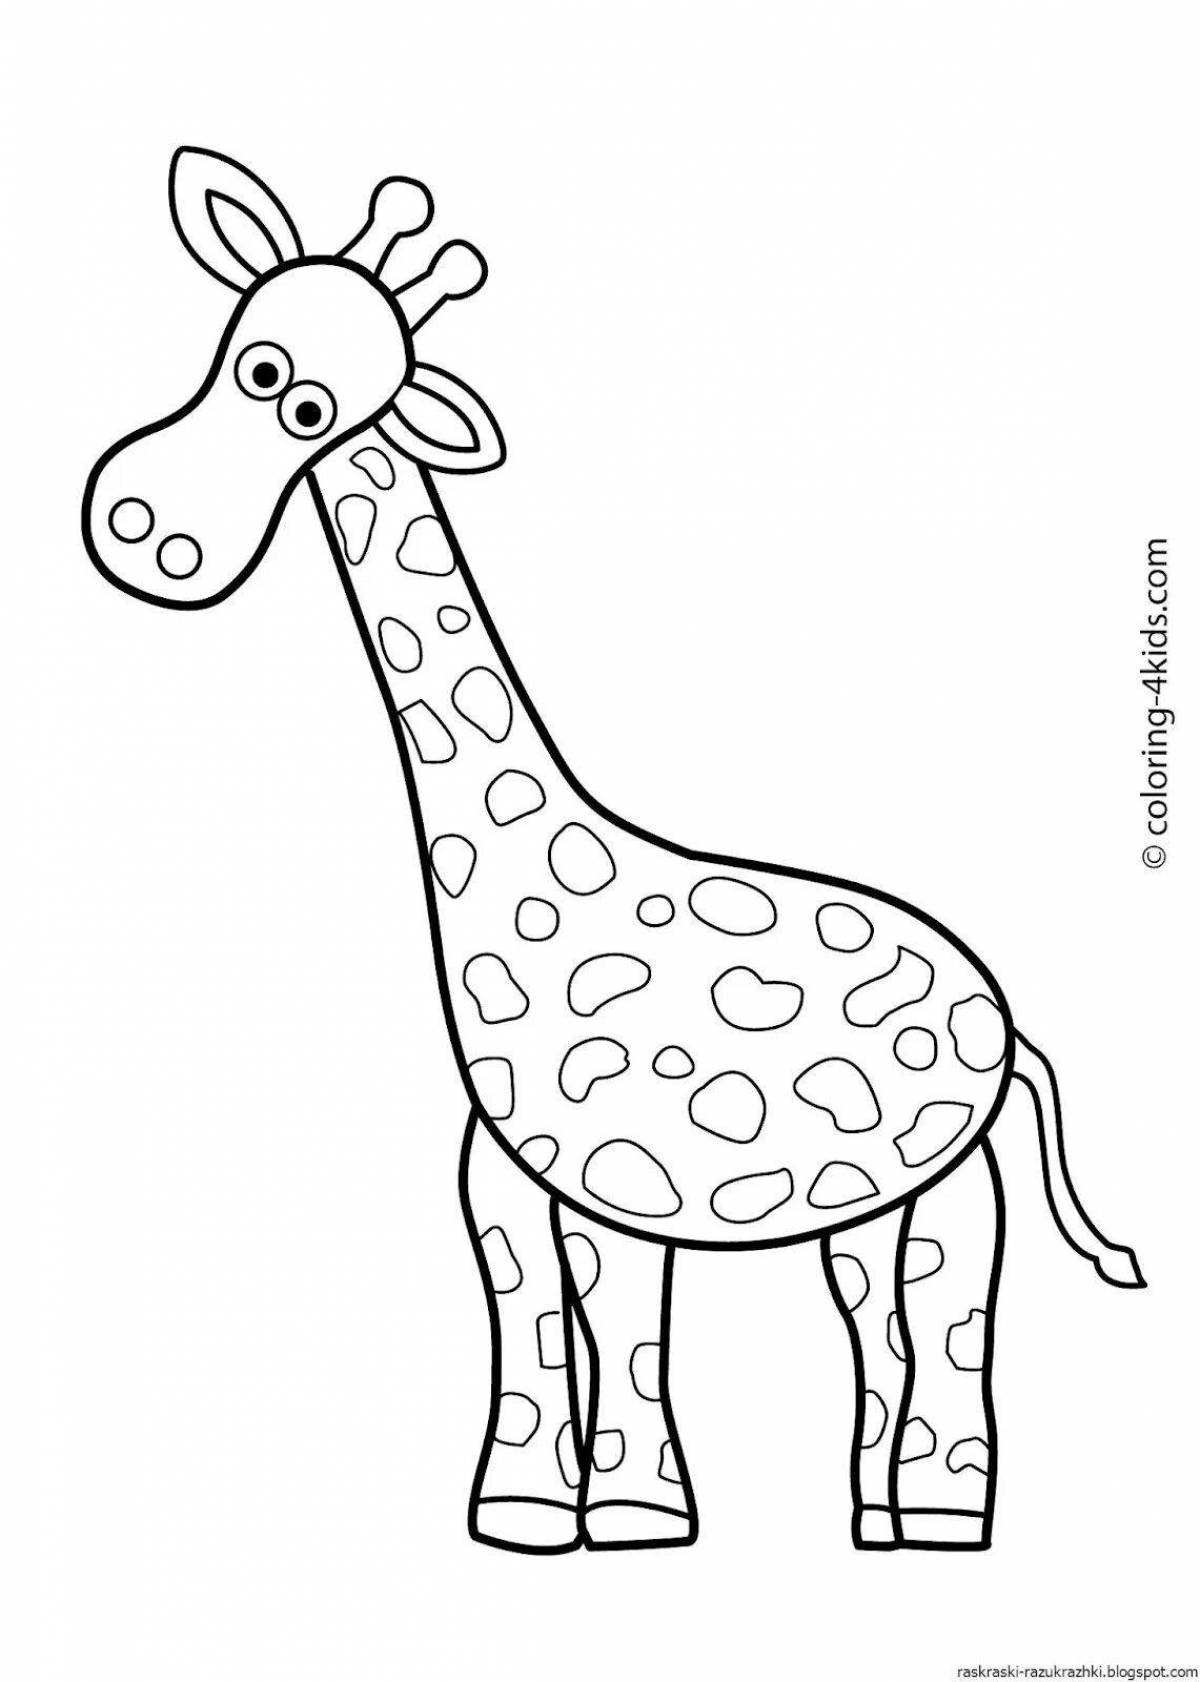 Увлекательный рисунок жирафа для детей